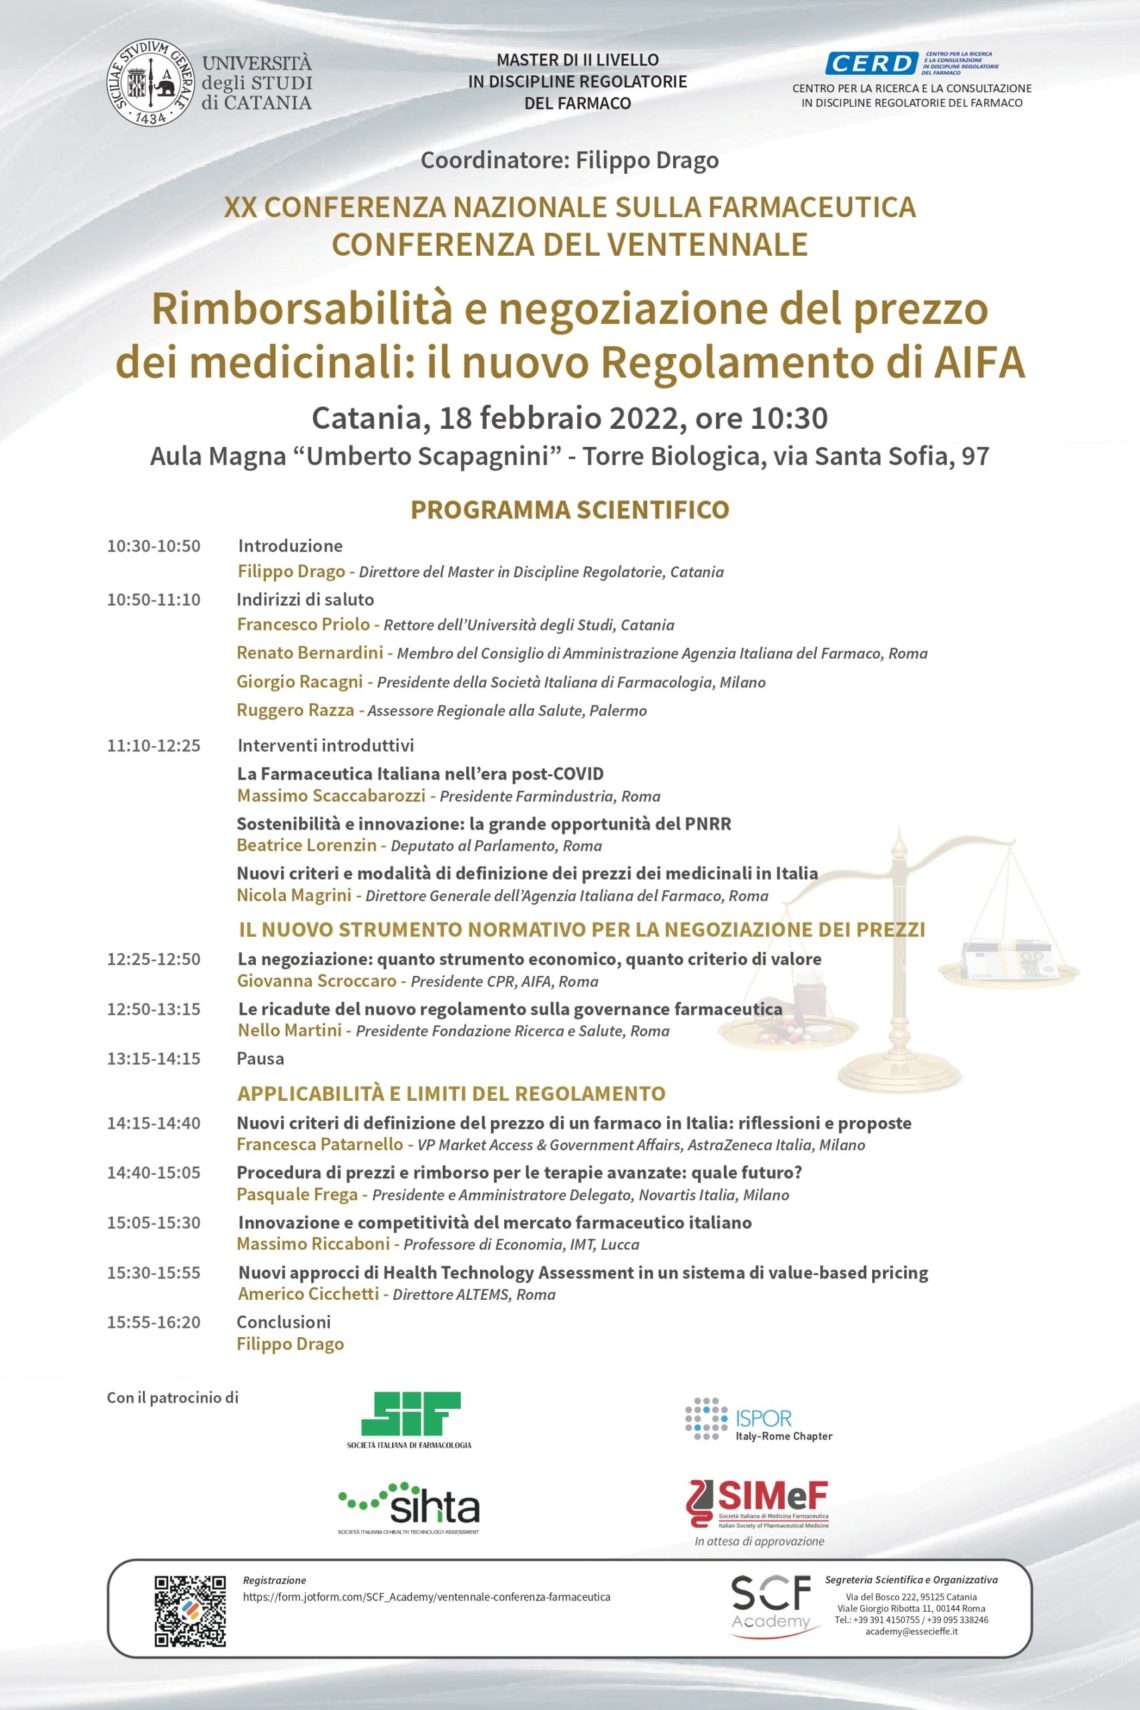 Catania: Conferenza Nazionale sulla Farmaceutica sul nuovo Regolamento per il prezzo e rimborso dei farmaci